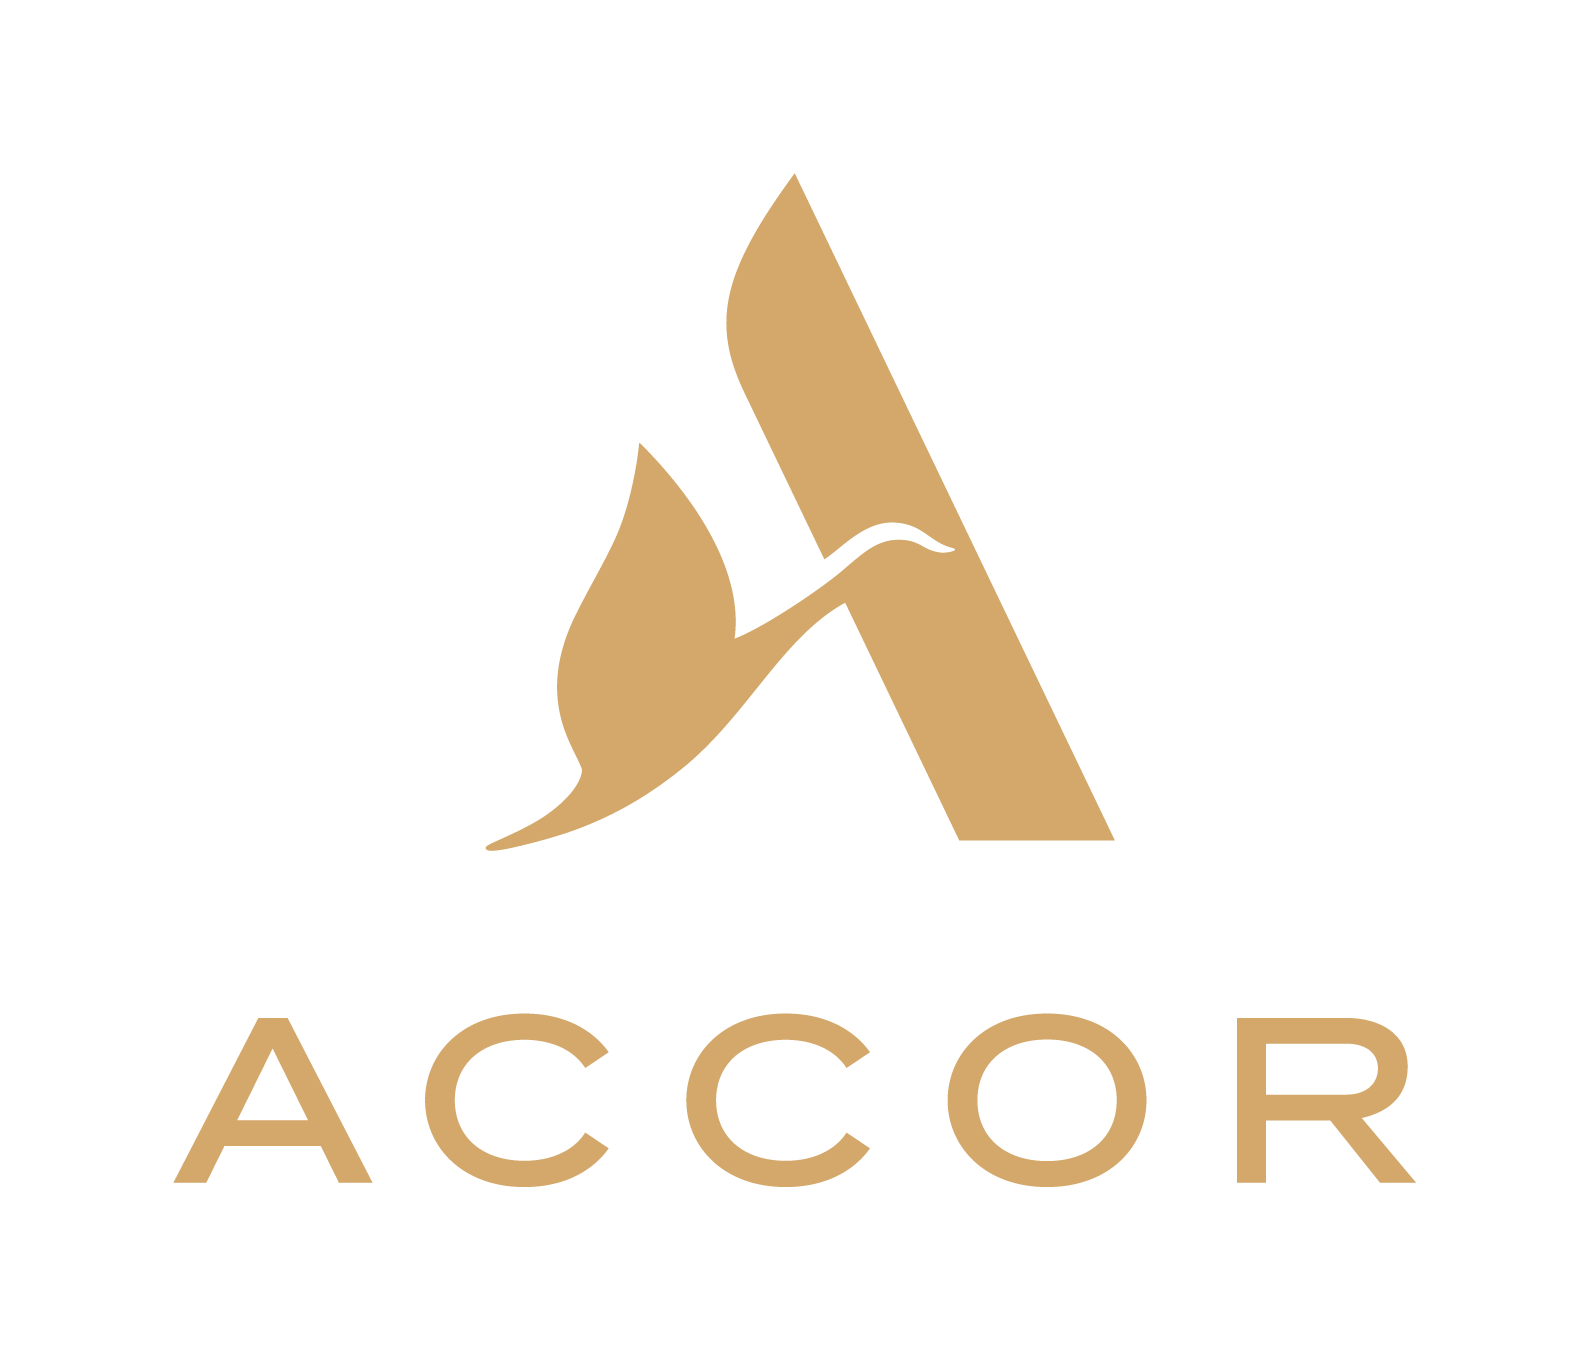 Accor Hotel - Feel welcome